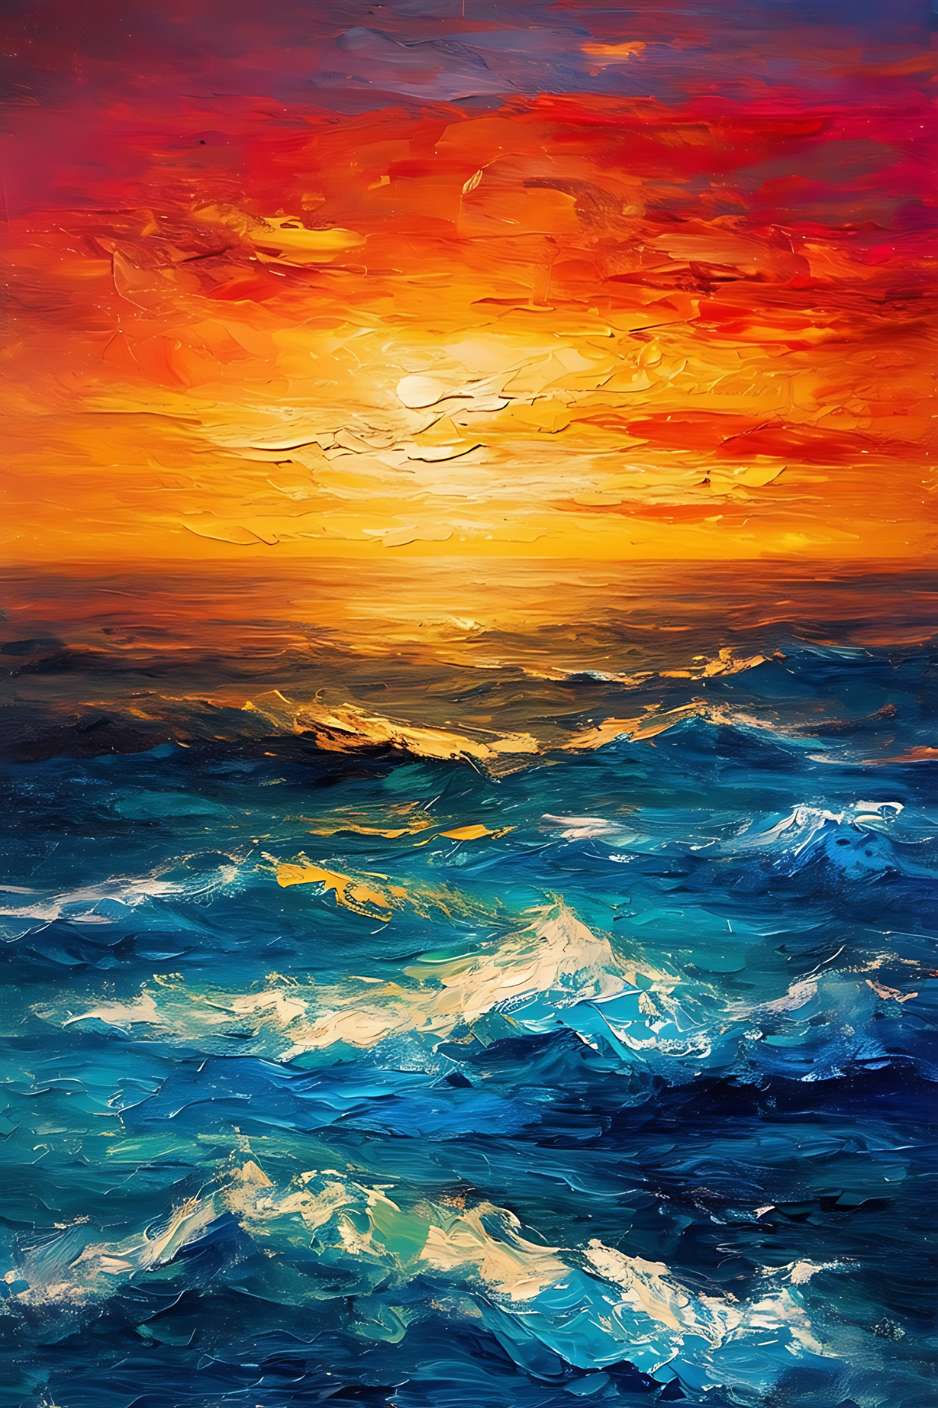 Un coucher de soleil flamboyant sur des vagues tumultueuses, capturant la beauté sauvage et sereine de l'océan